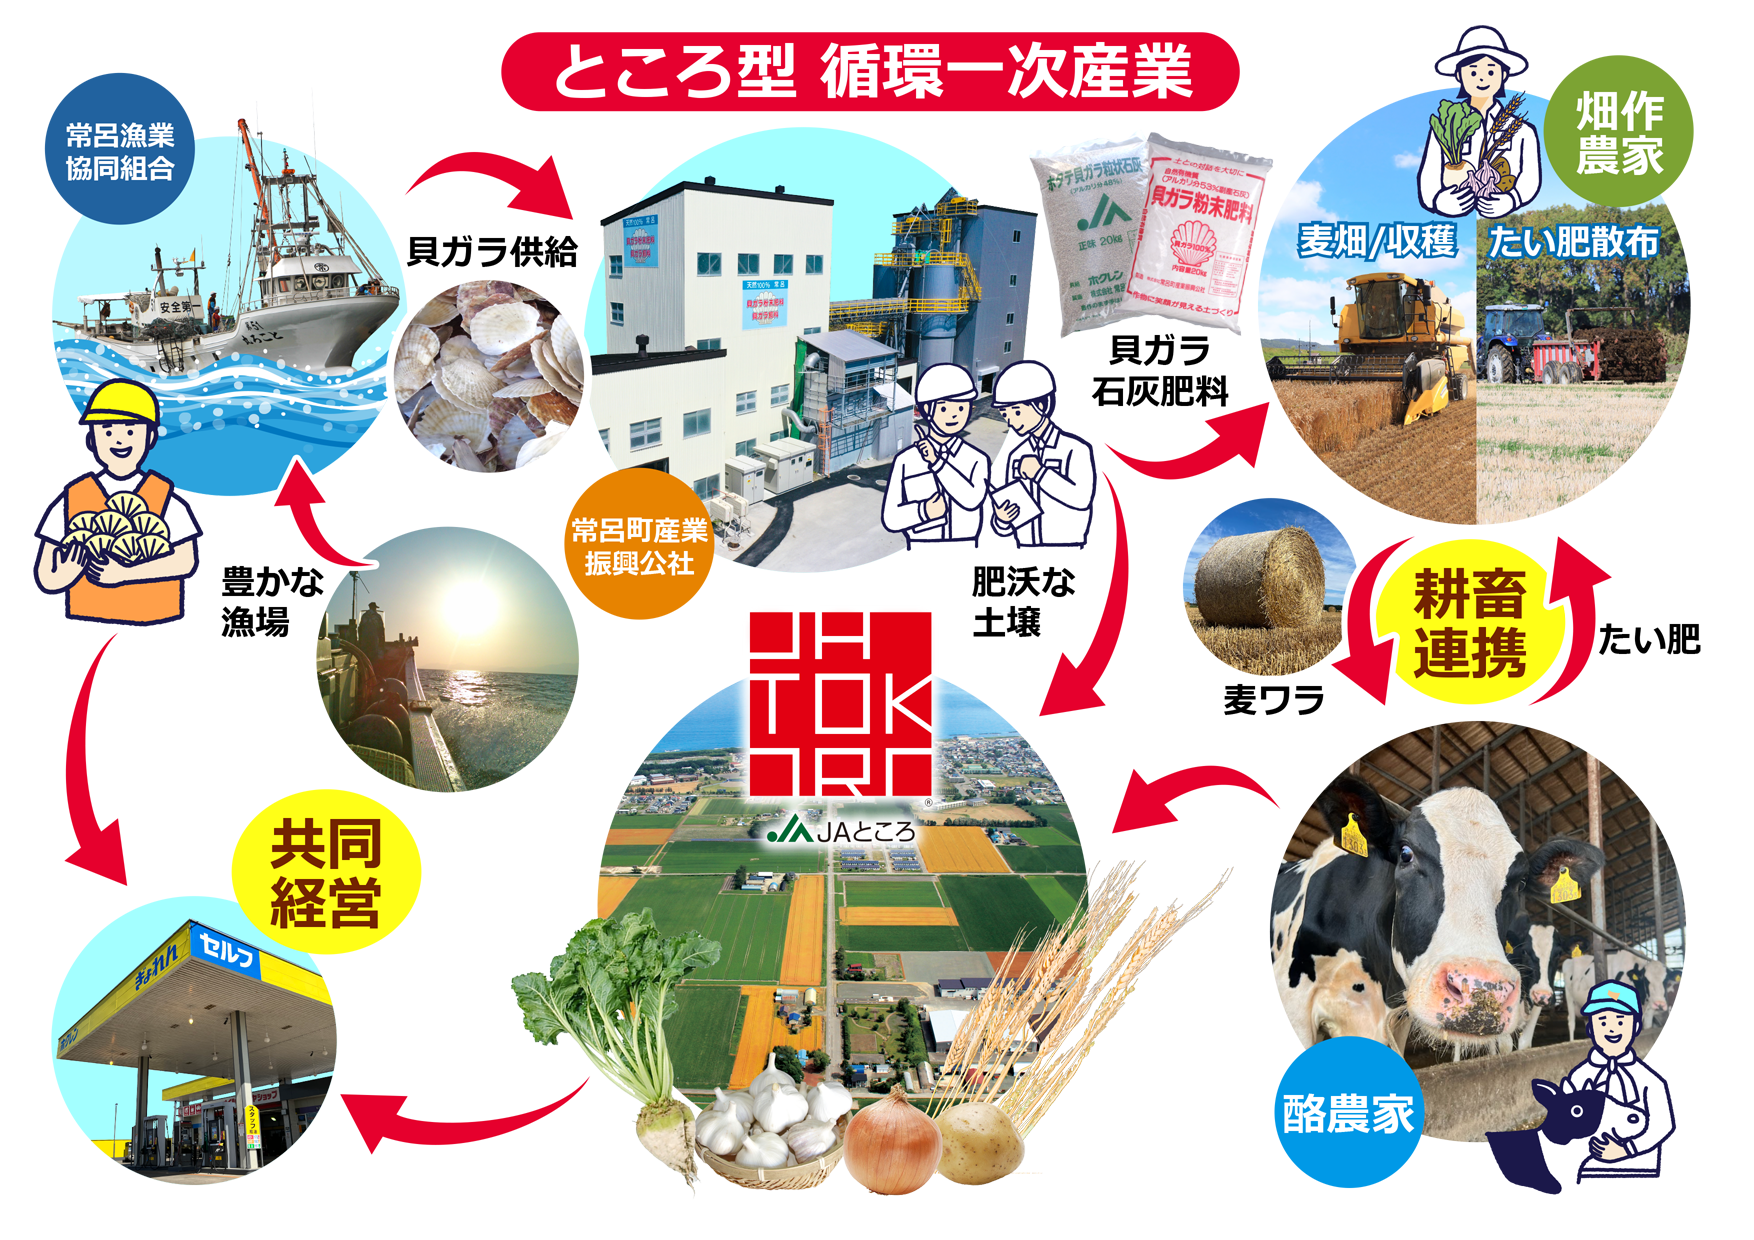 【更新情報】常呂町の輪作体系イメージ図などを掲載しました